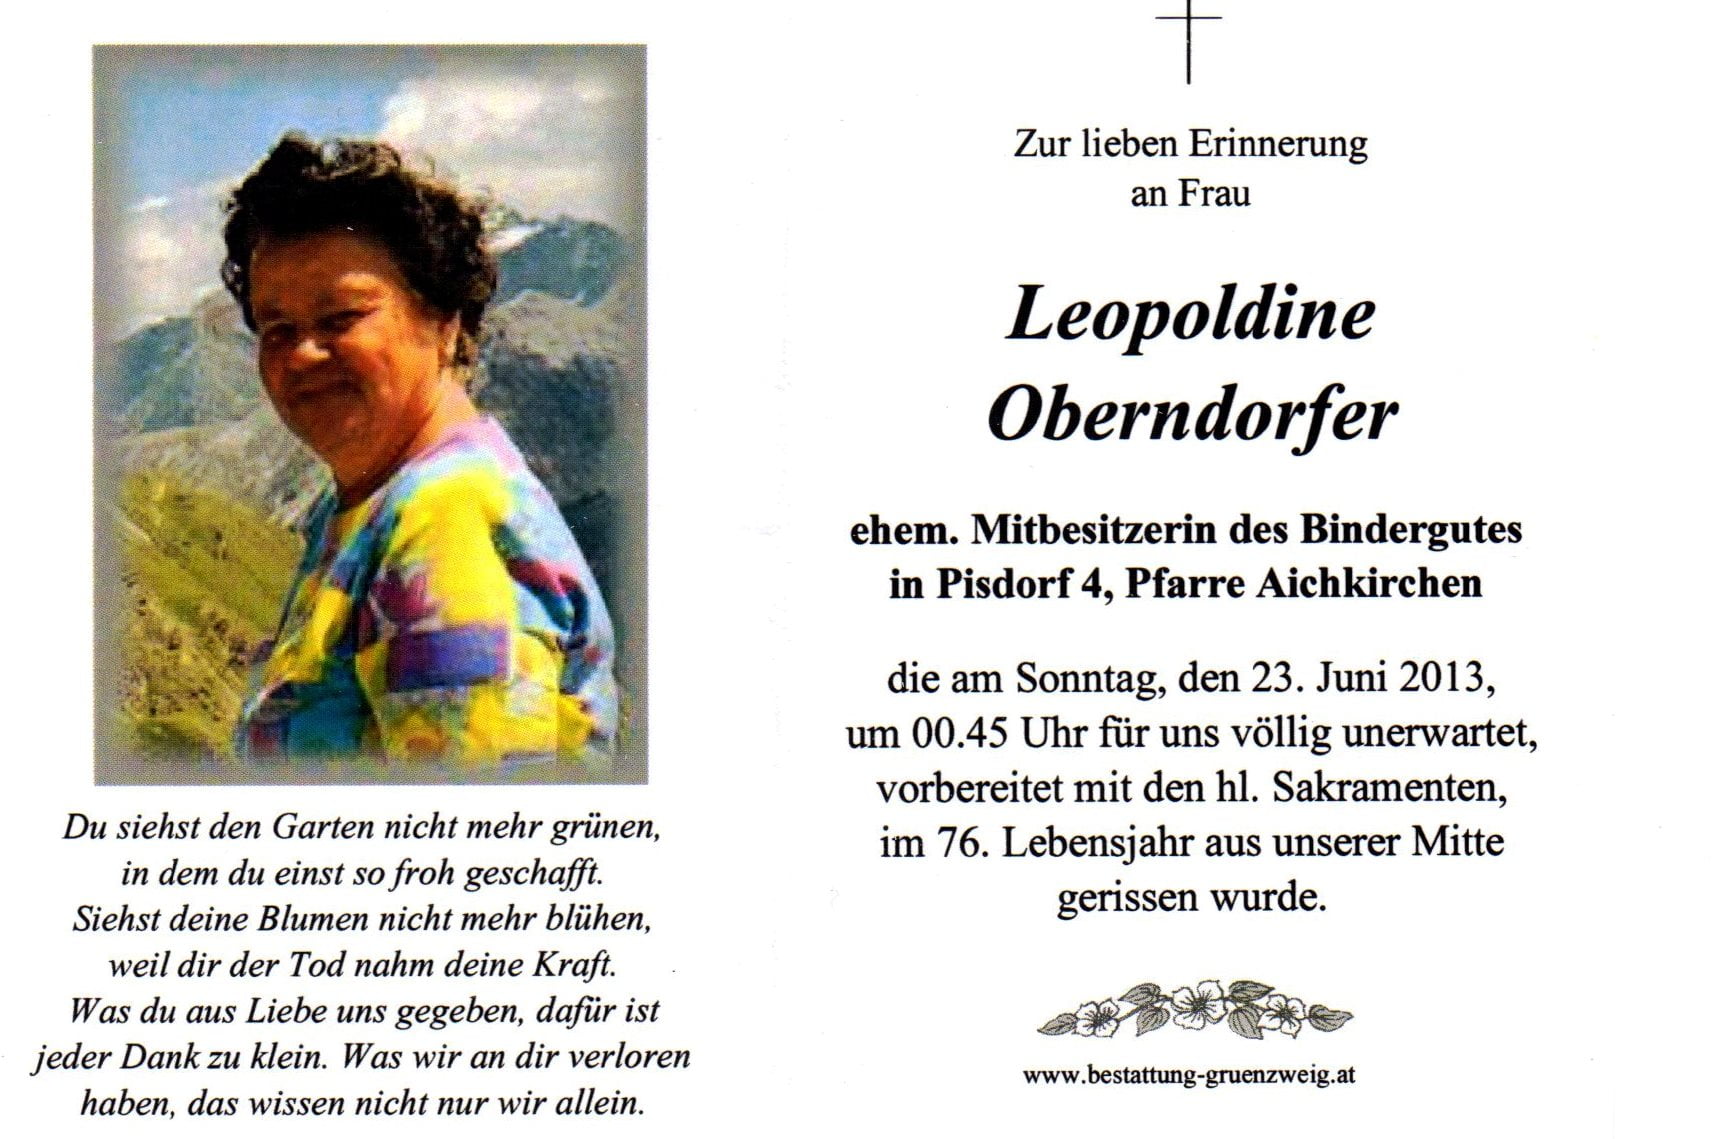 Oberndorfer Leopoldine